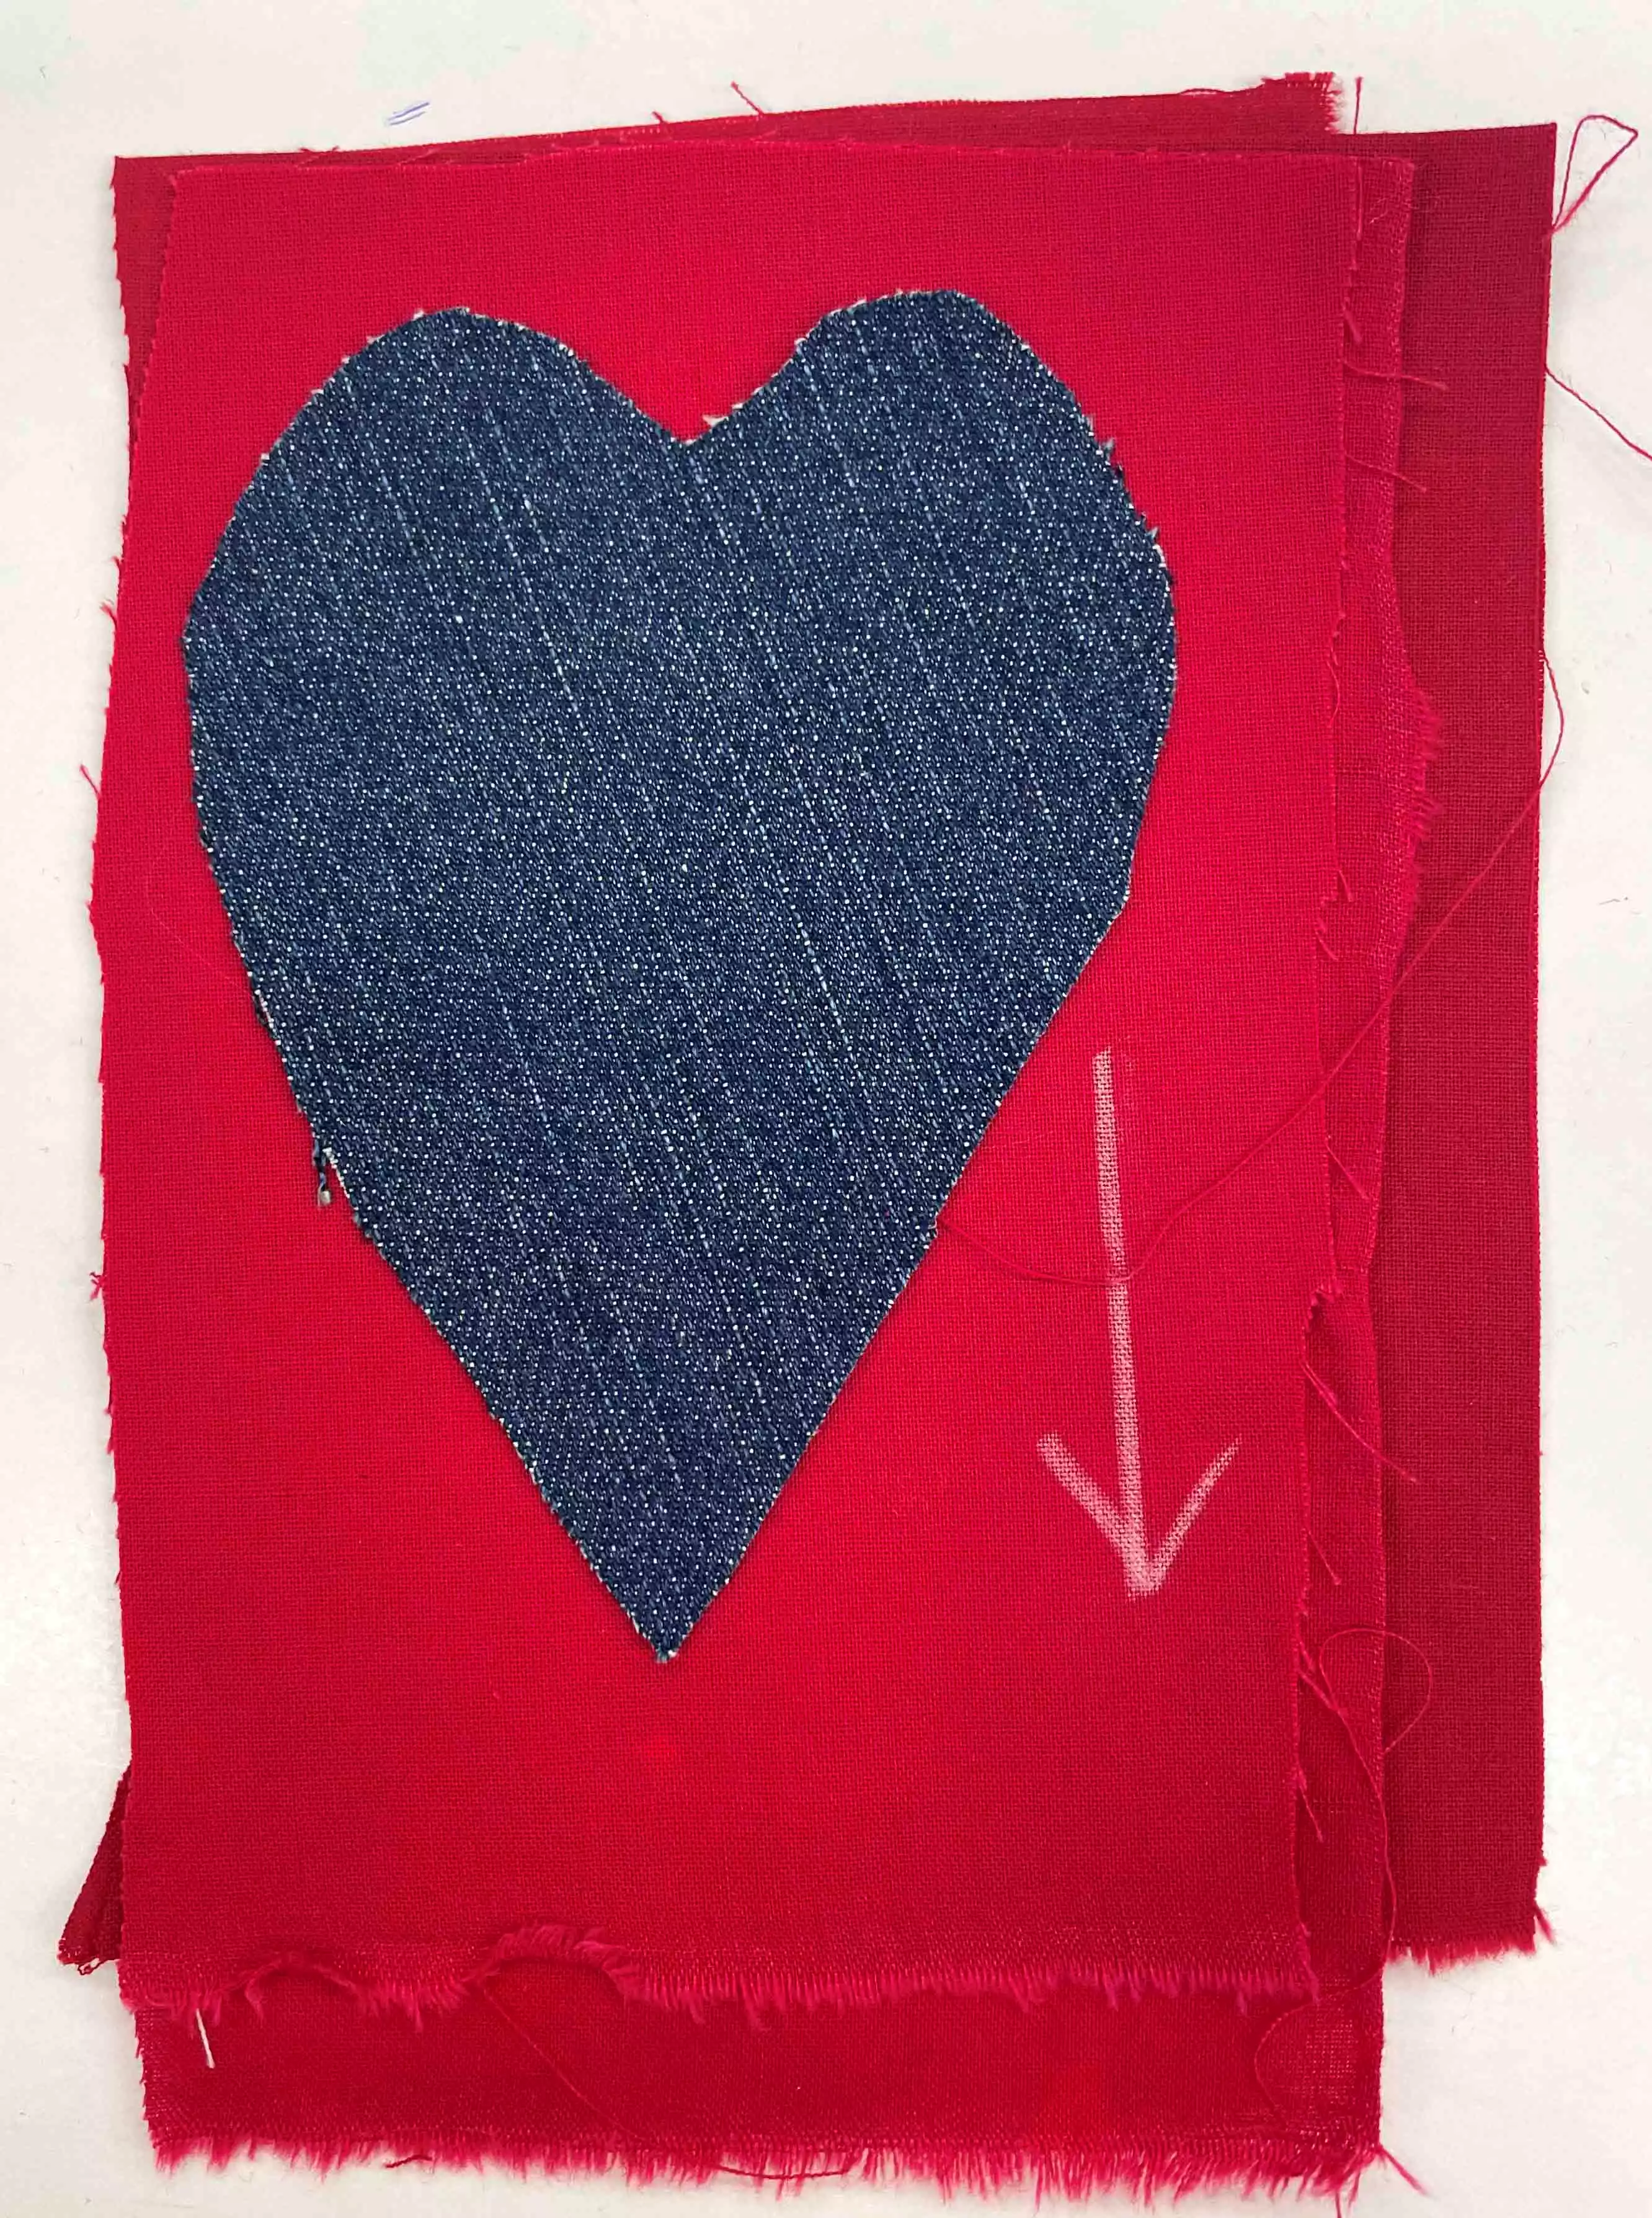 Heart-denim-pillows-step6.jpg